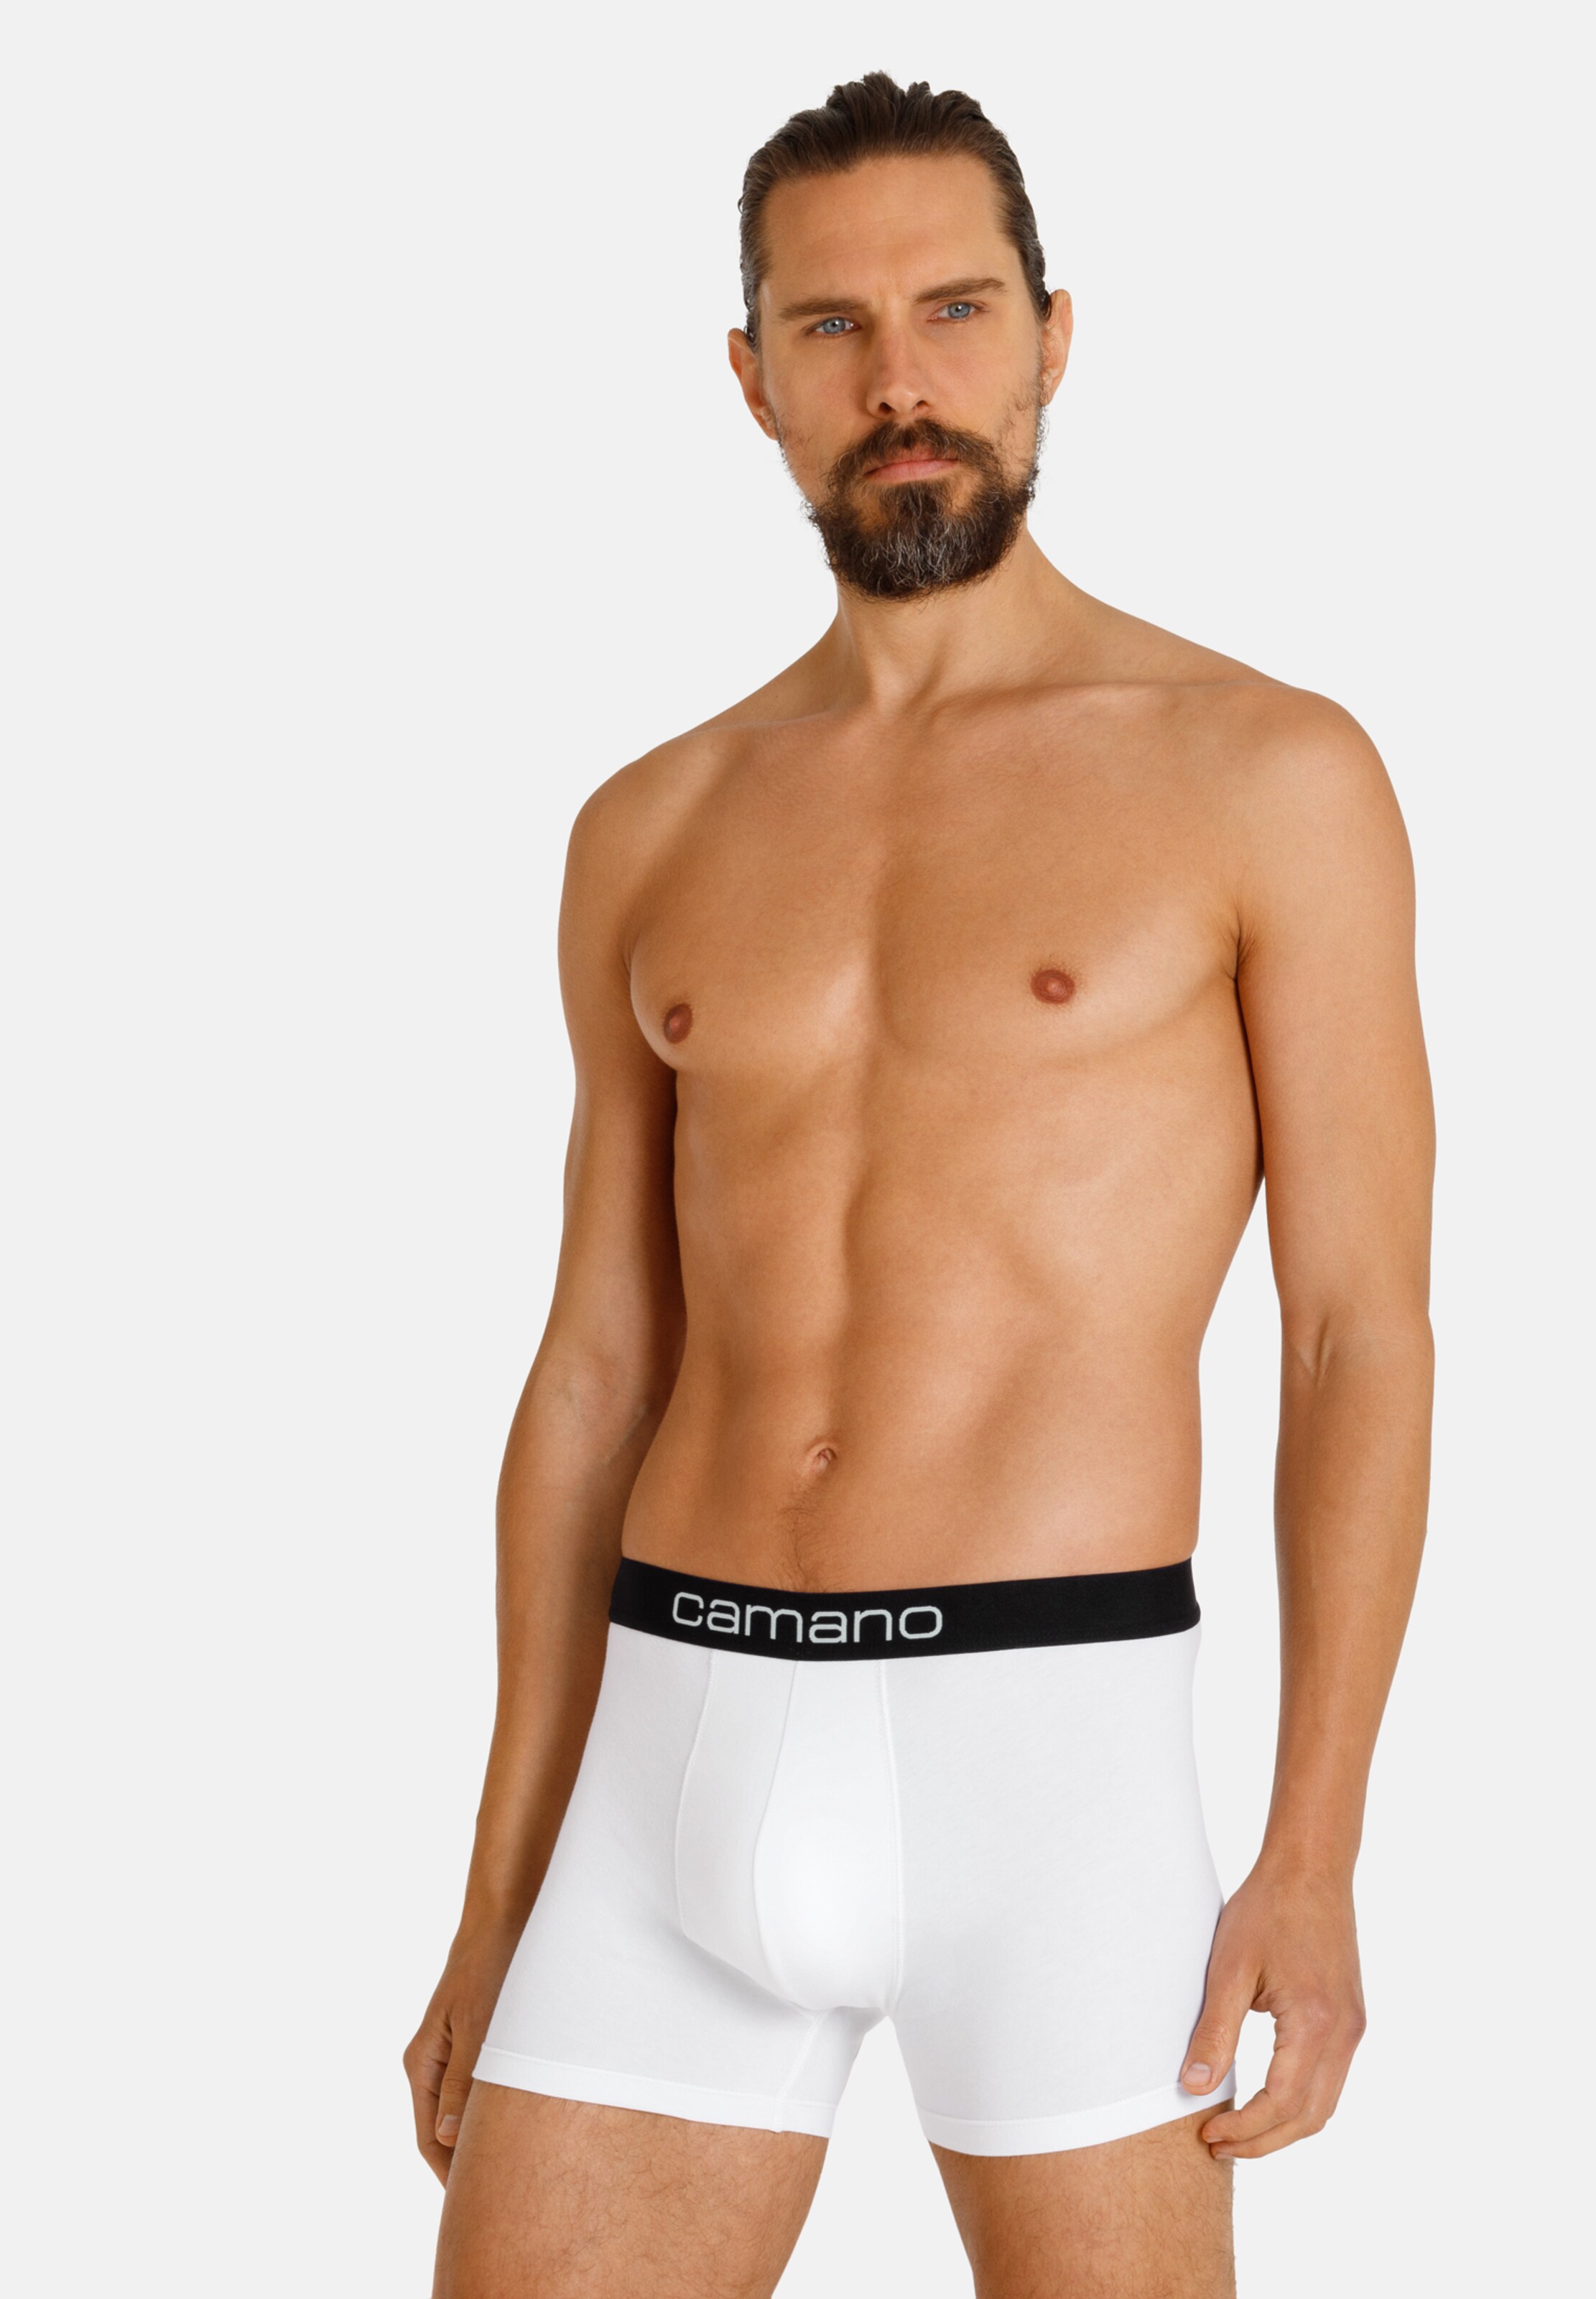 Männer Wäsche camano Boxershorts 'Comfort' in Schwarz, Weiß - QC66771